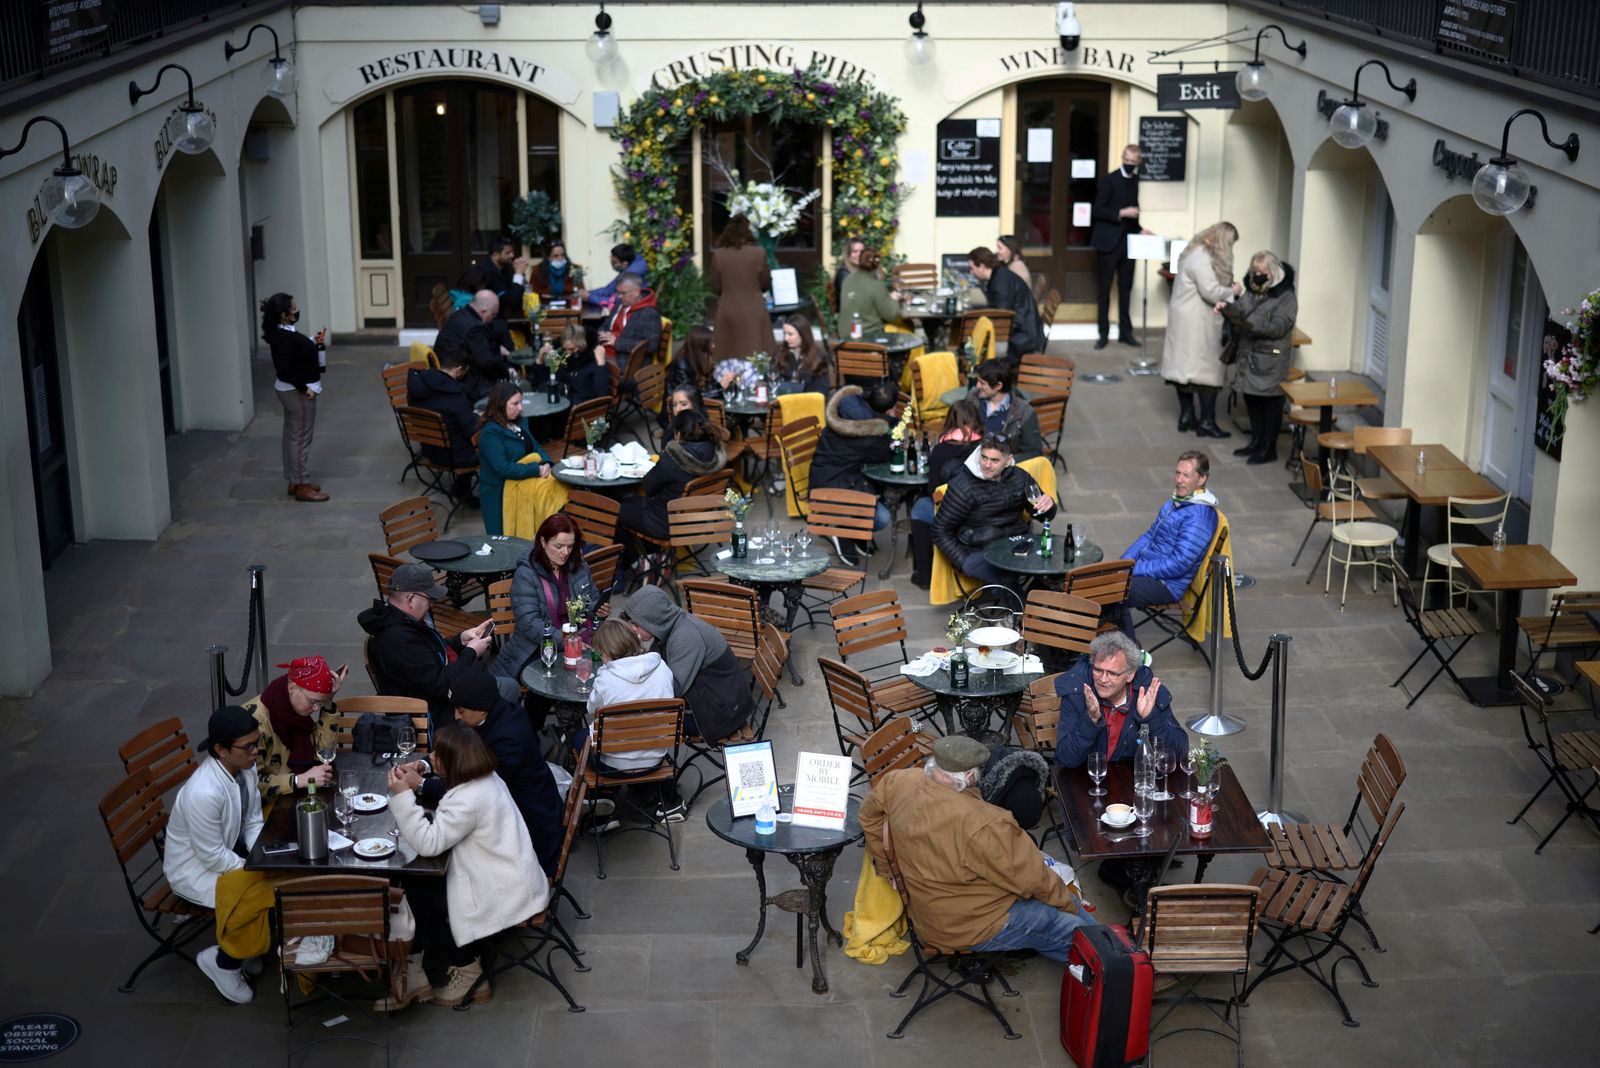 أضحى بإمكان البريطانيين الاستمتاع بالجلوس في باحات المطاعم بع مع تخفيف قيود فيروس كورونا، لندن، 12 أبريل 2021 - REUTERS